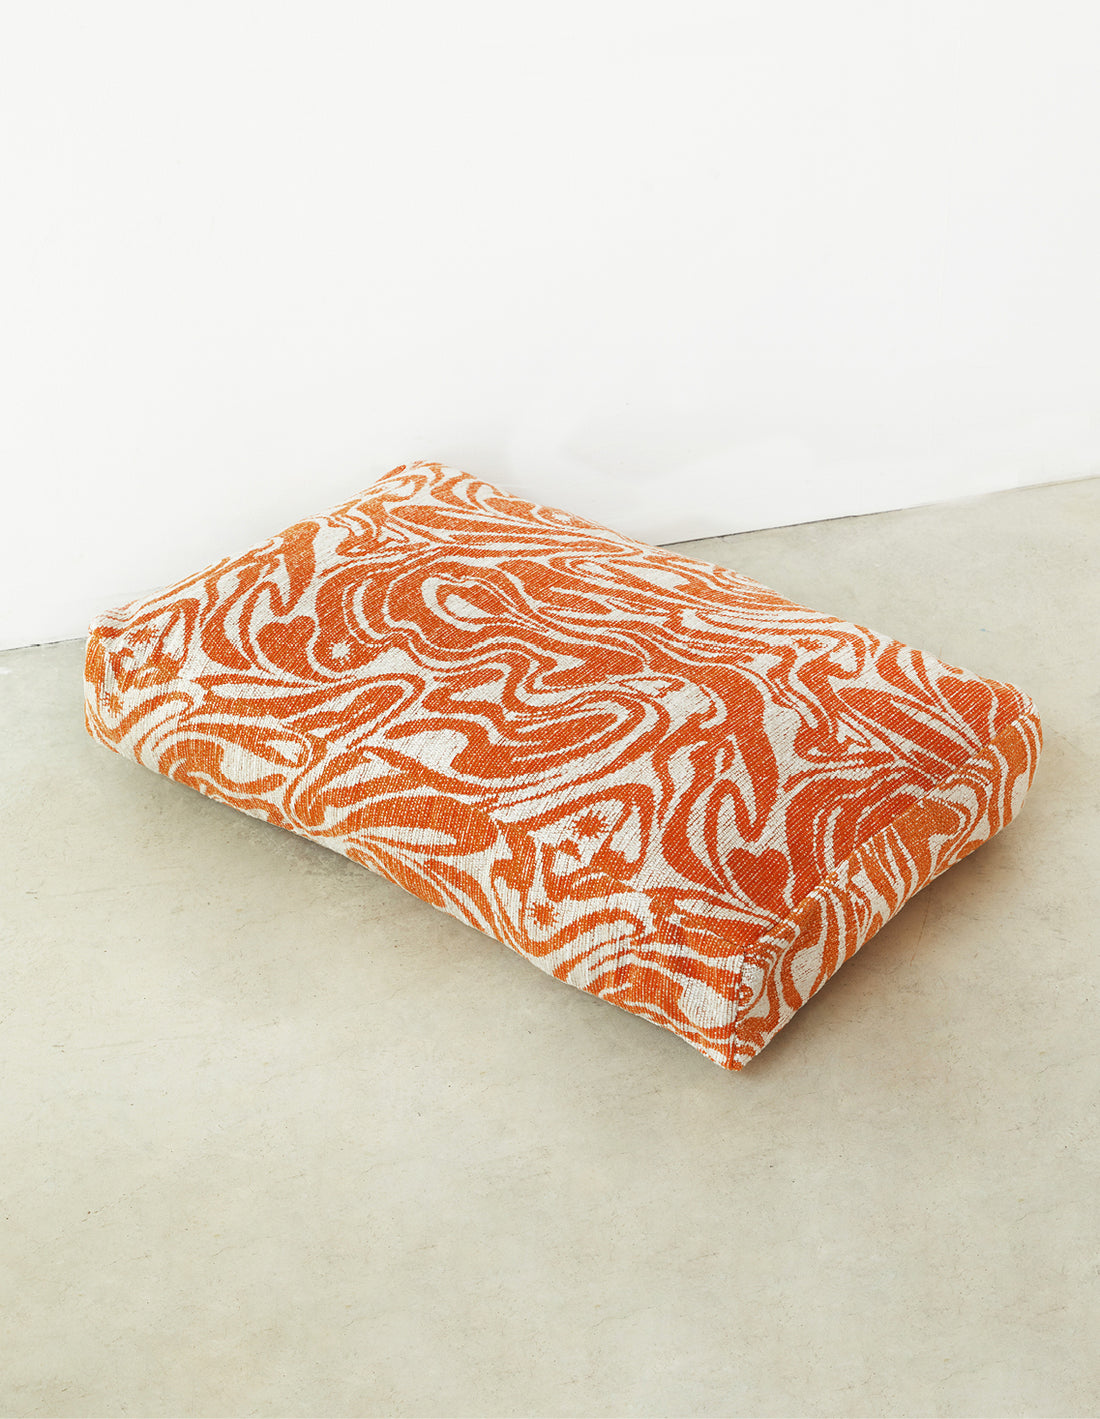 Swirl dog bed - orange / beige